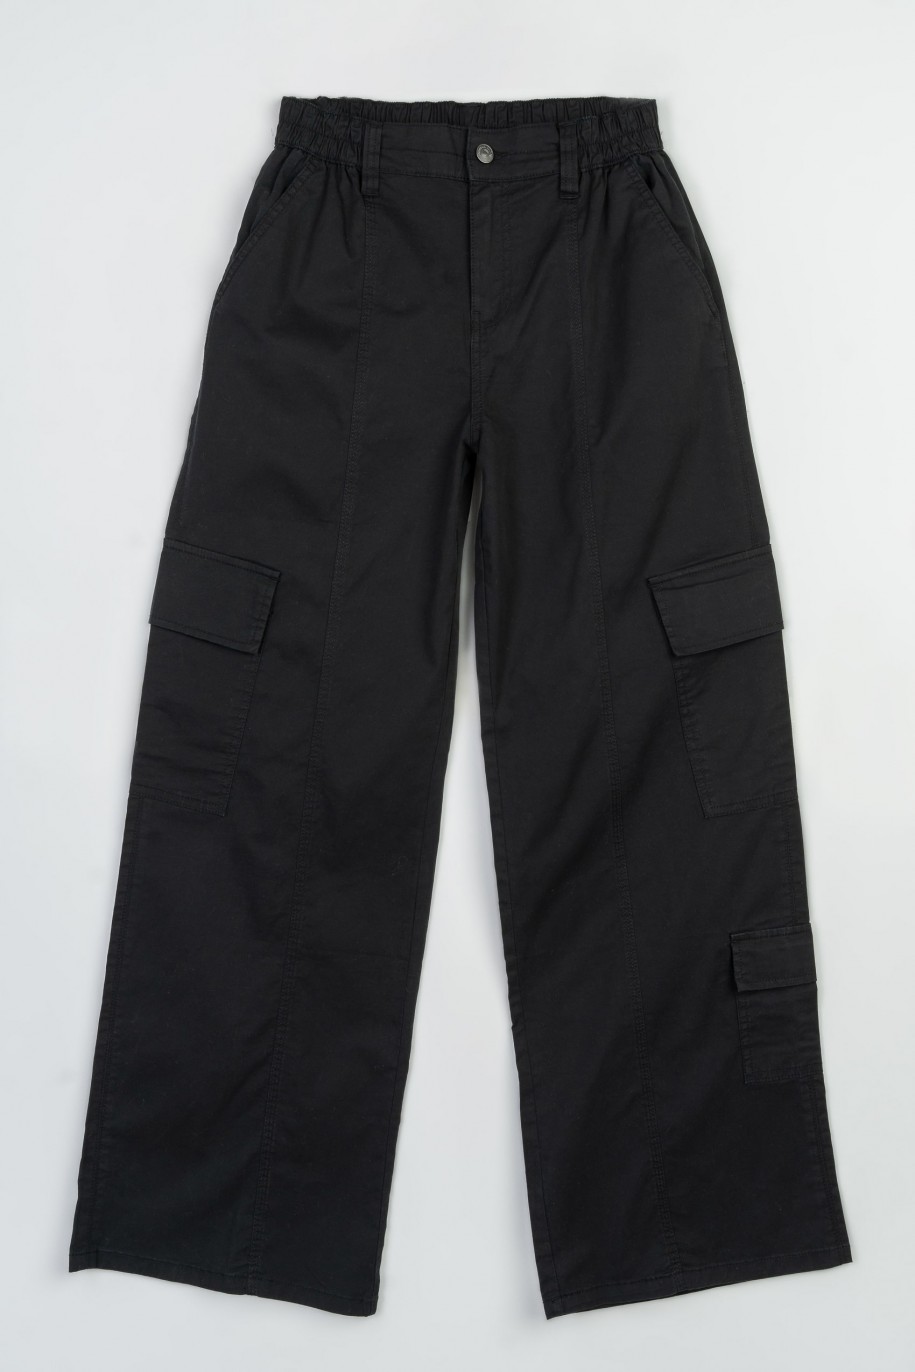 Czarne spodnie z szerokimi nogawkami z przestrzennymi kieszeniami - 47344